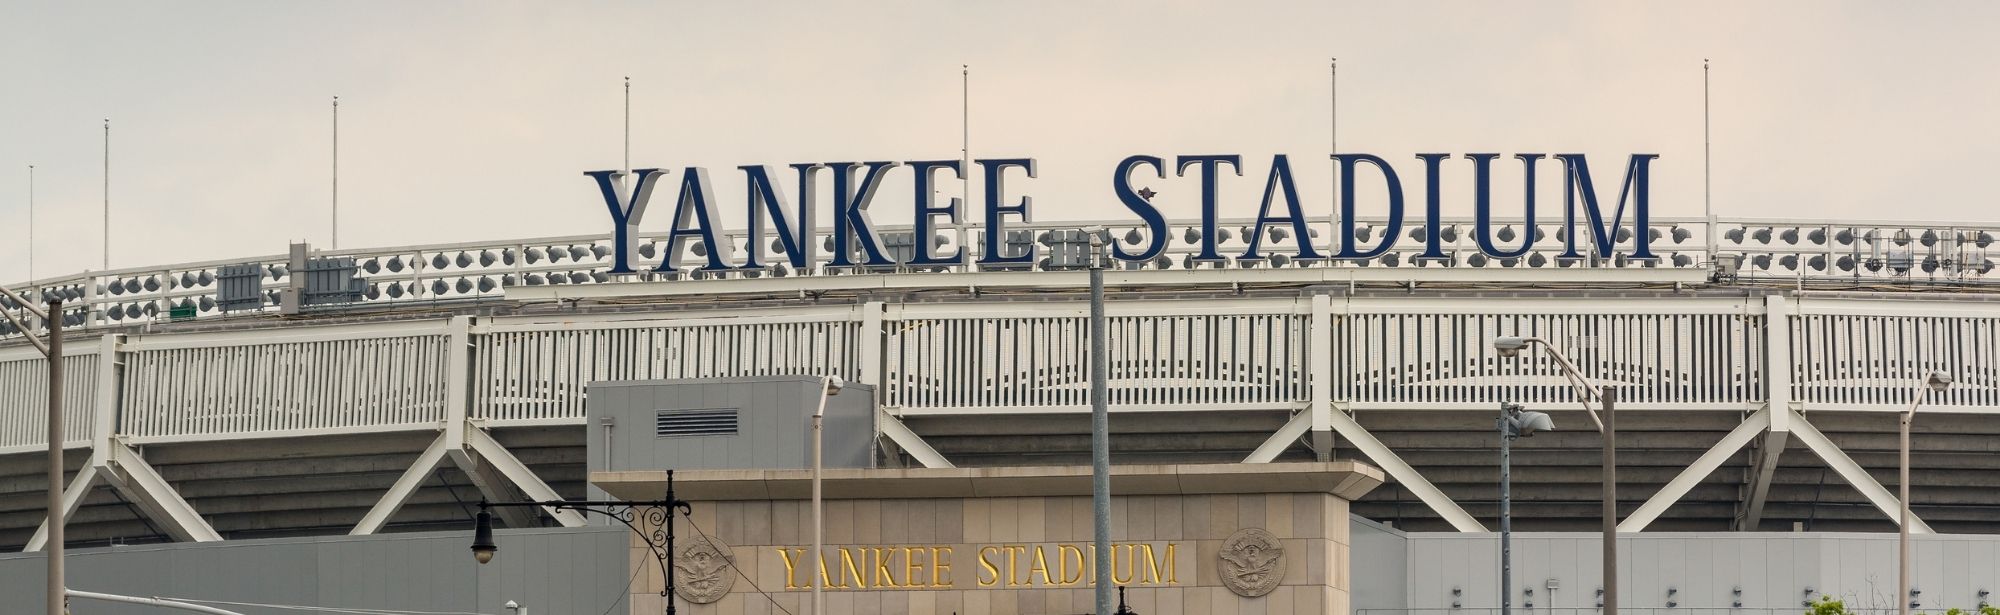 new york yankee stadium sign